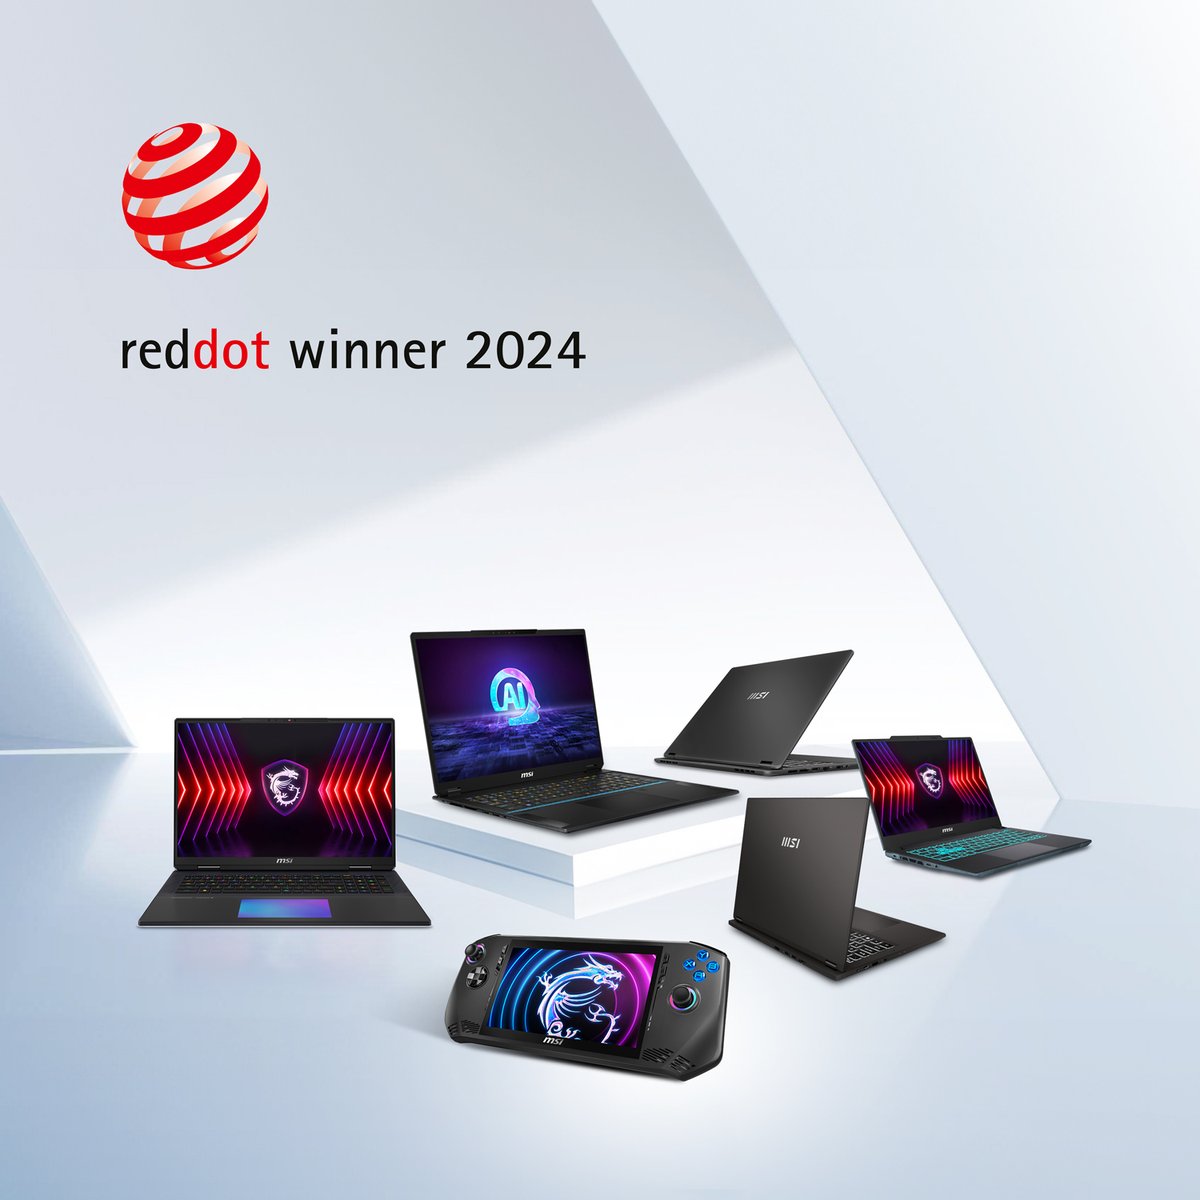 🎉¡Estamos encantados de anunciar que 13 de nuestros productos han ganado el Premio Red Dot al Diseño de Producto 2024!🏆 #RedDotAward #Reddot2024 #MSI #latops #AIPC